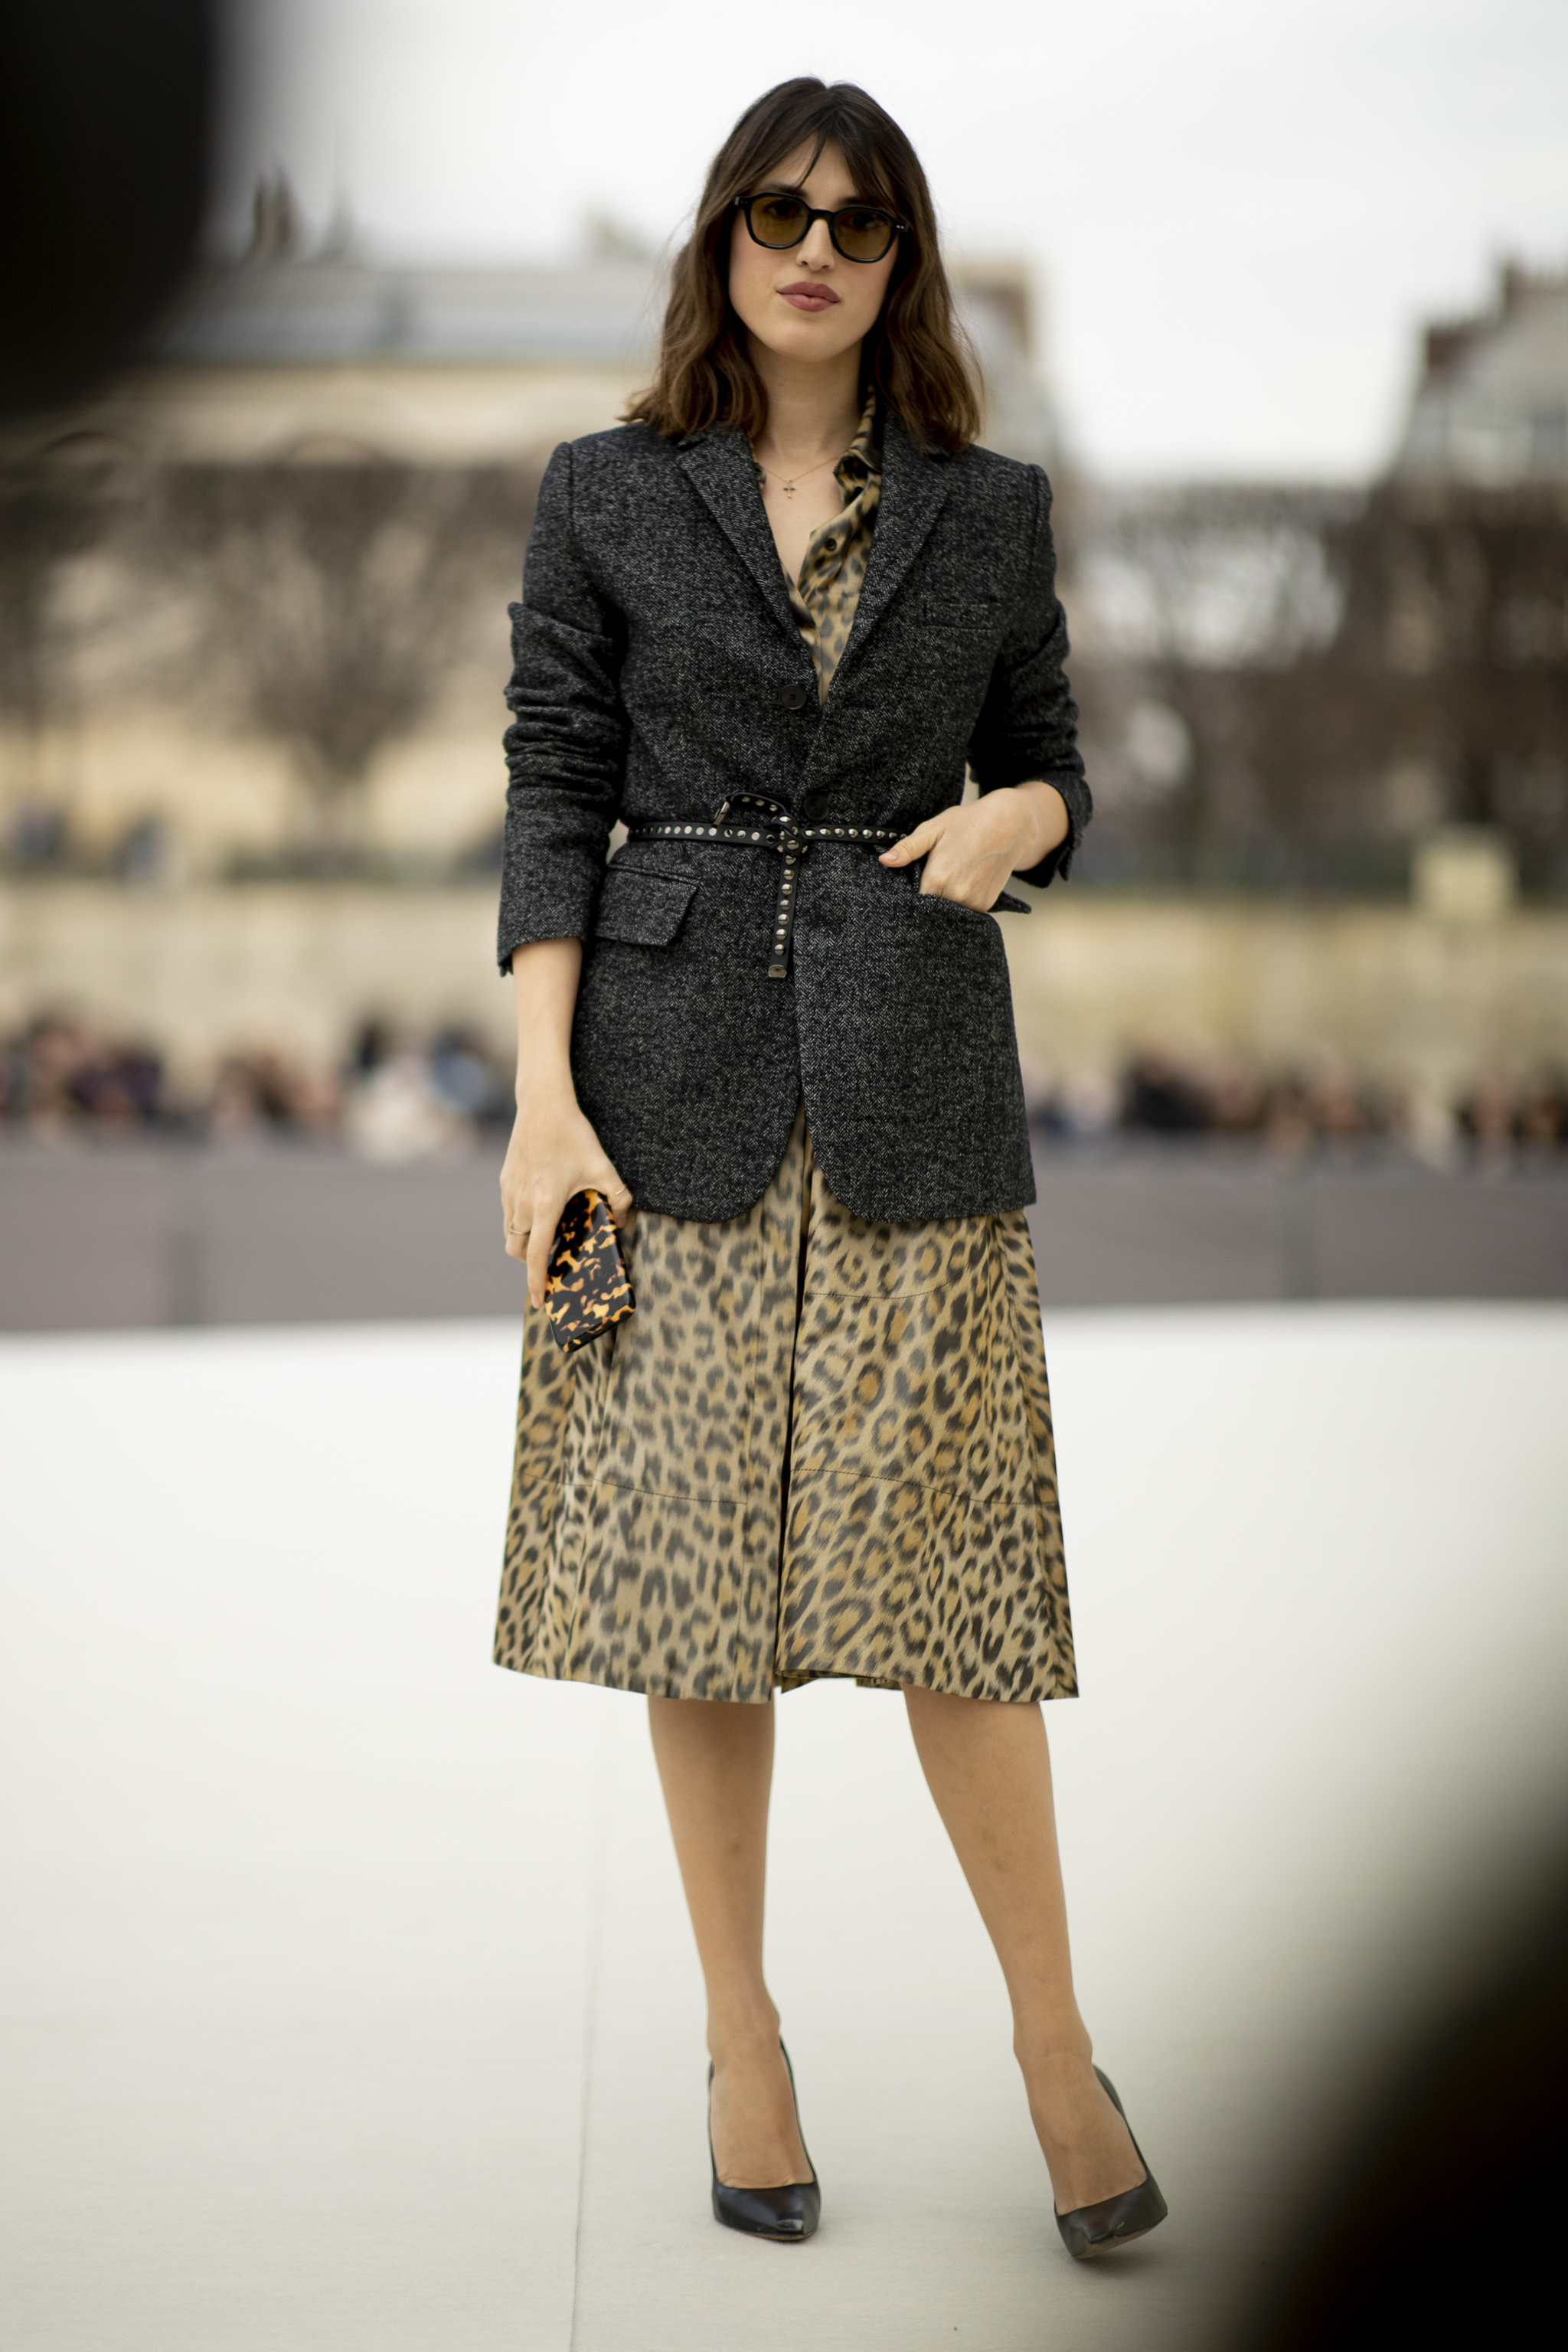 Jeanne Damas con un blazer, salones y vestido en leopard print.